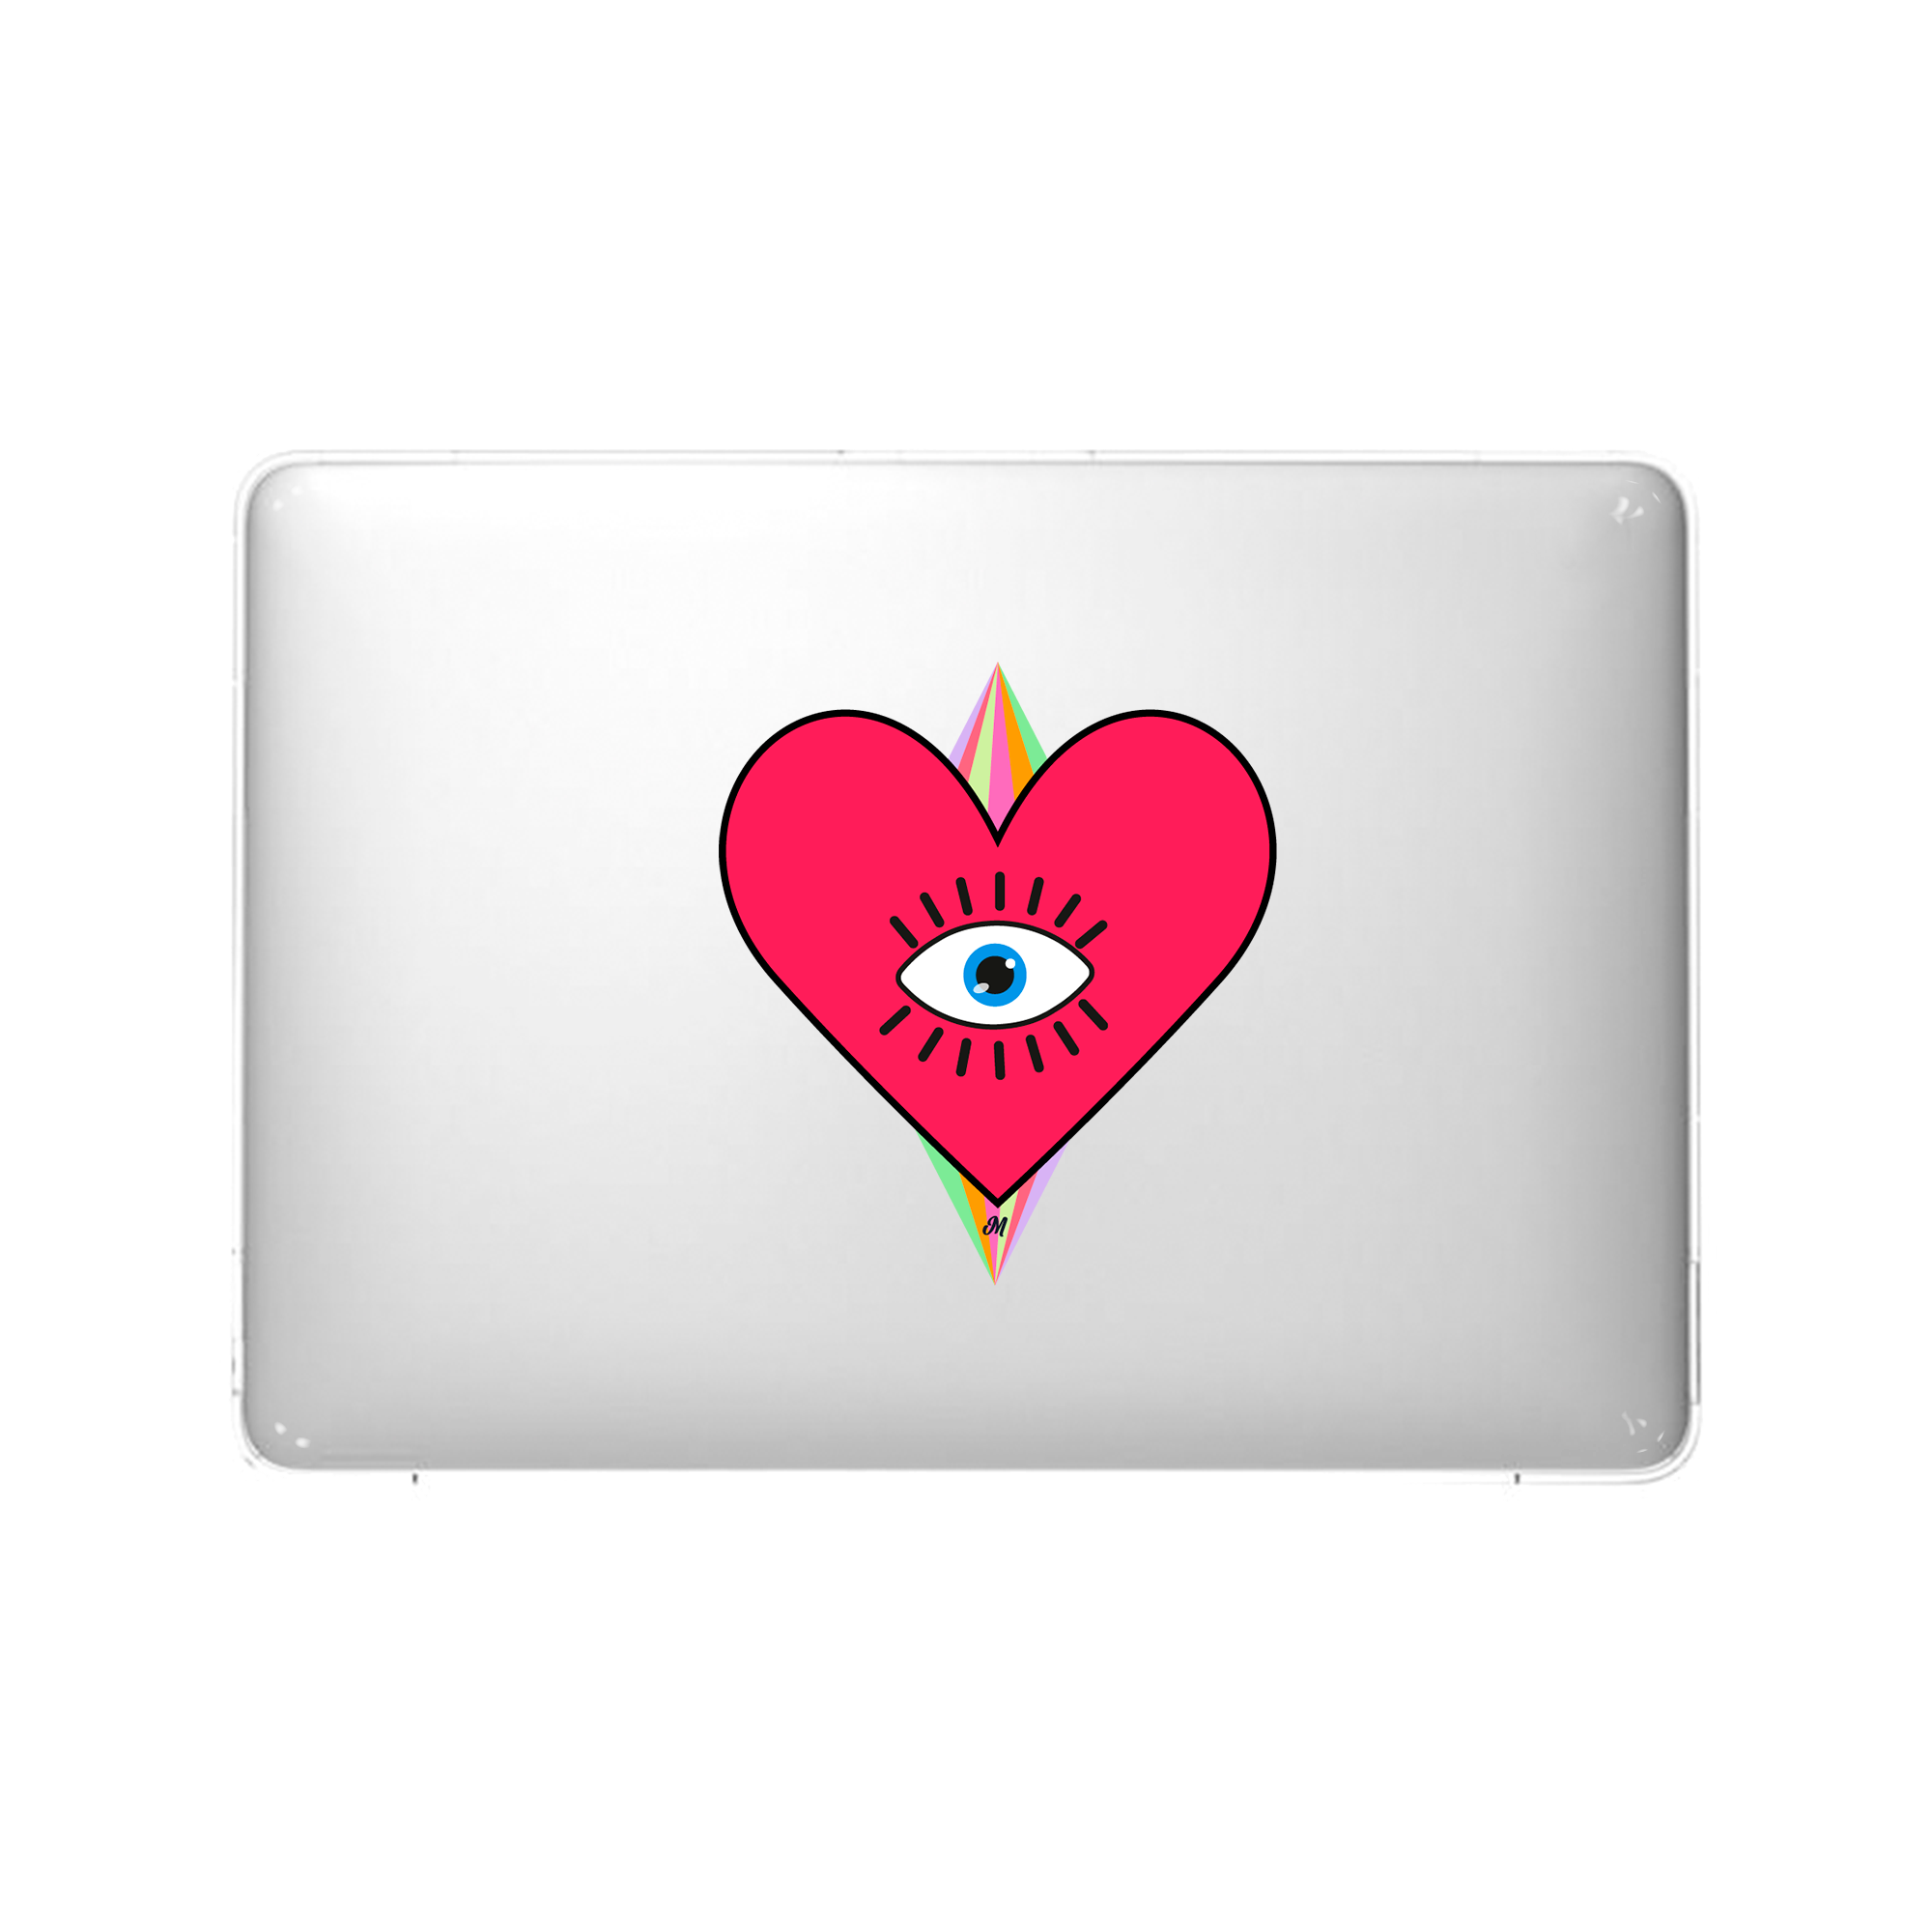 Corazon arcoiri MacBook Case - Mandala Cases 